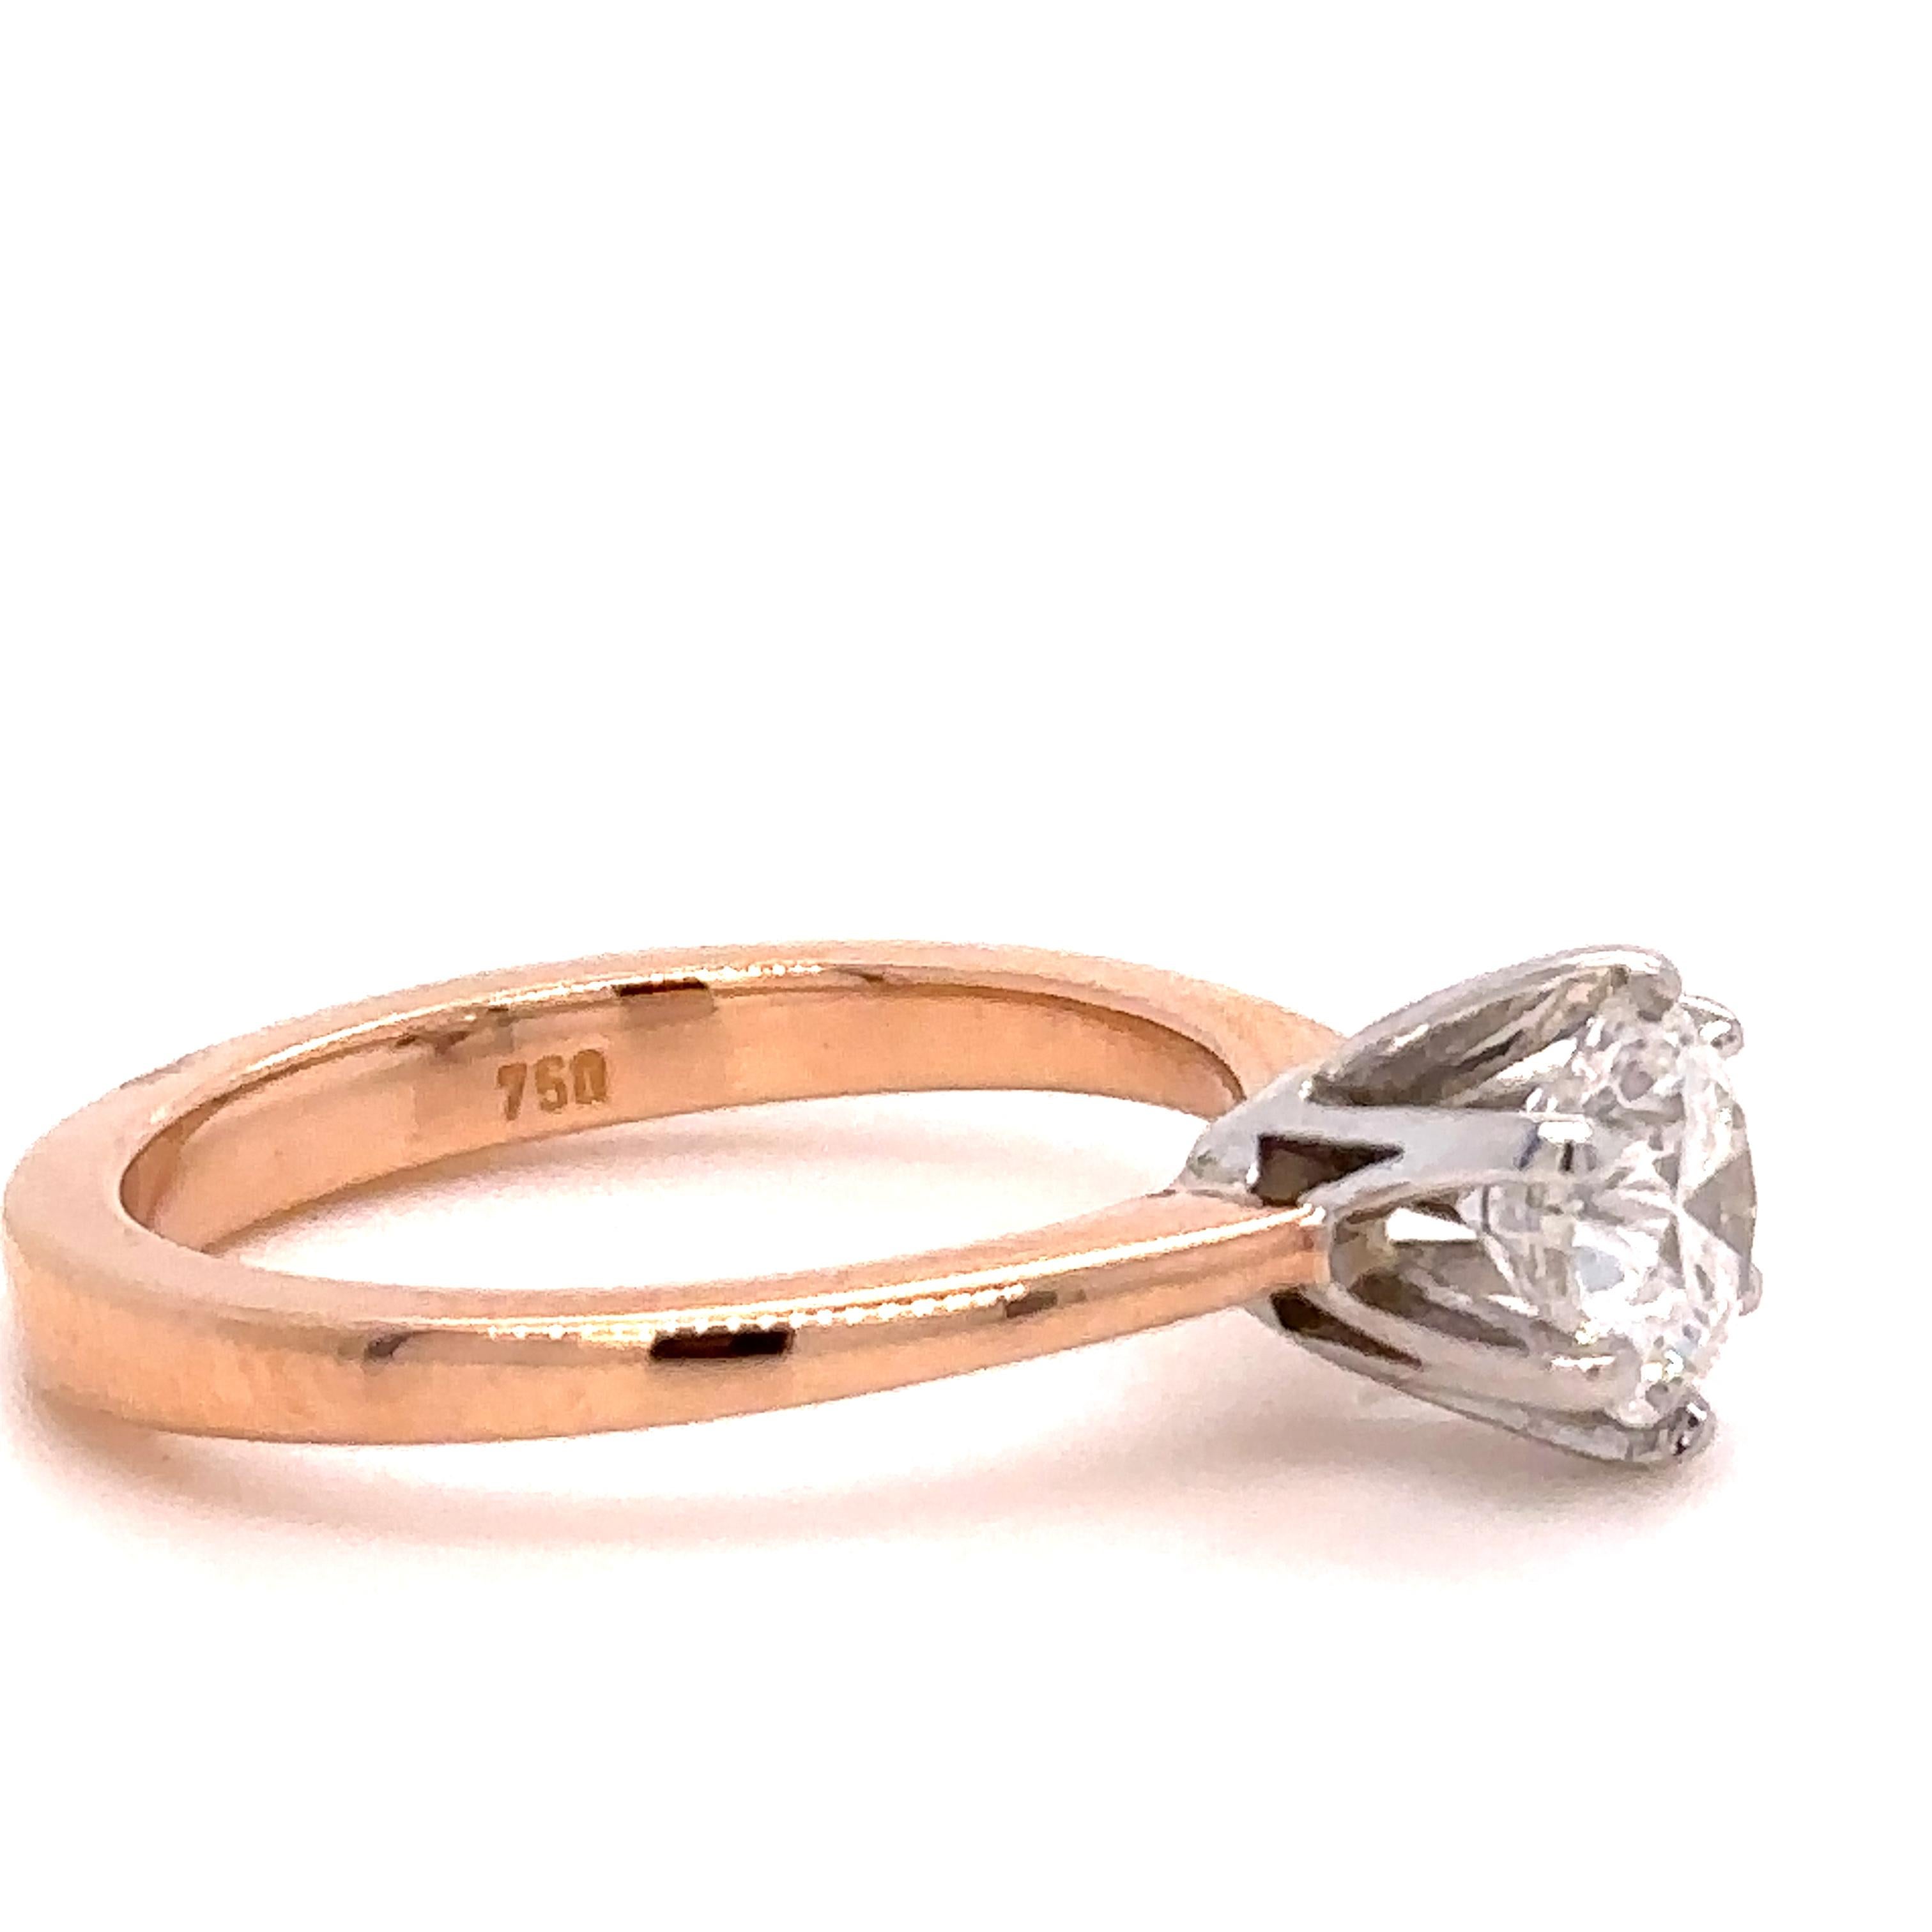 Round Cut GIA Diamond Engagement Ring 1.10Carat